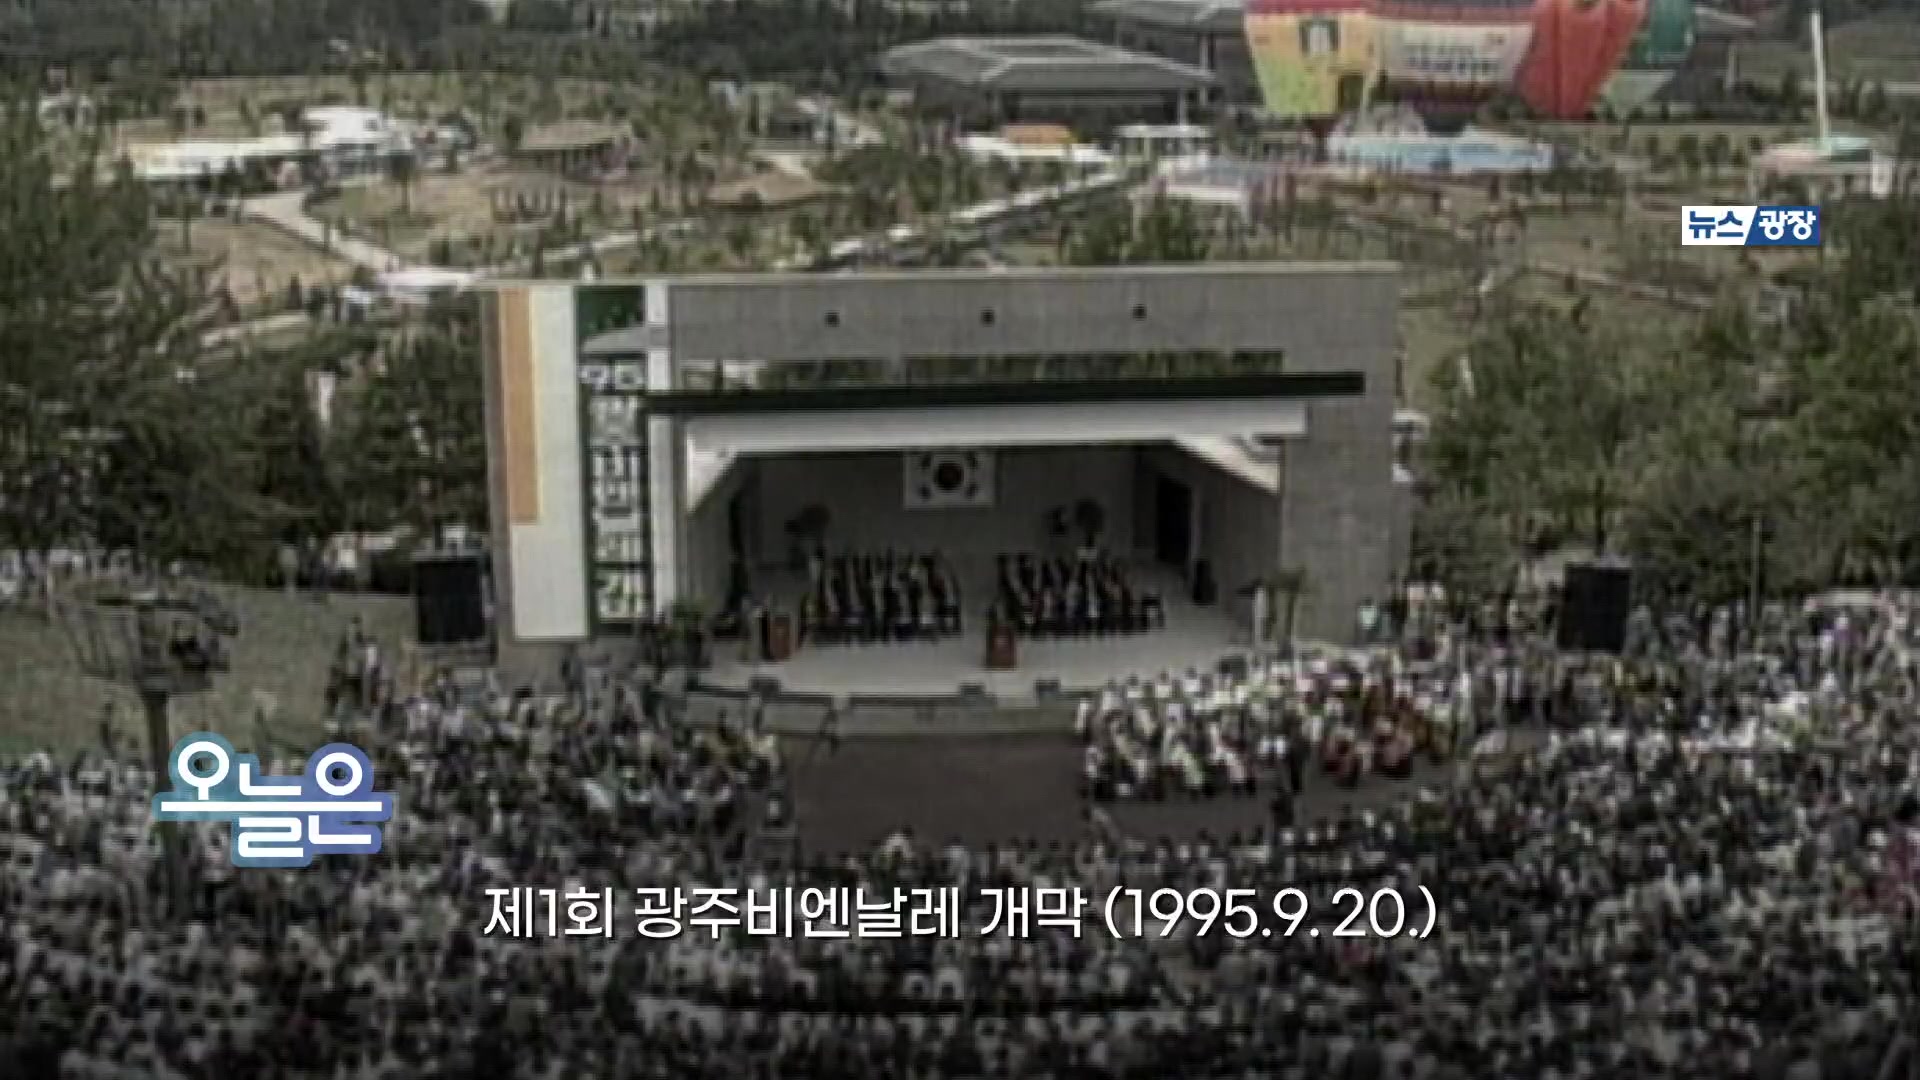 [오늘은] 제1회 광주비엔날레 개막 (1995. 9. 20)